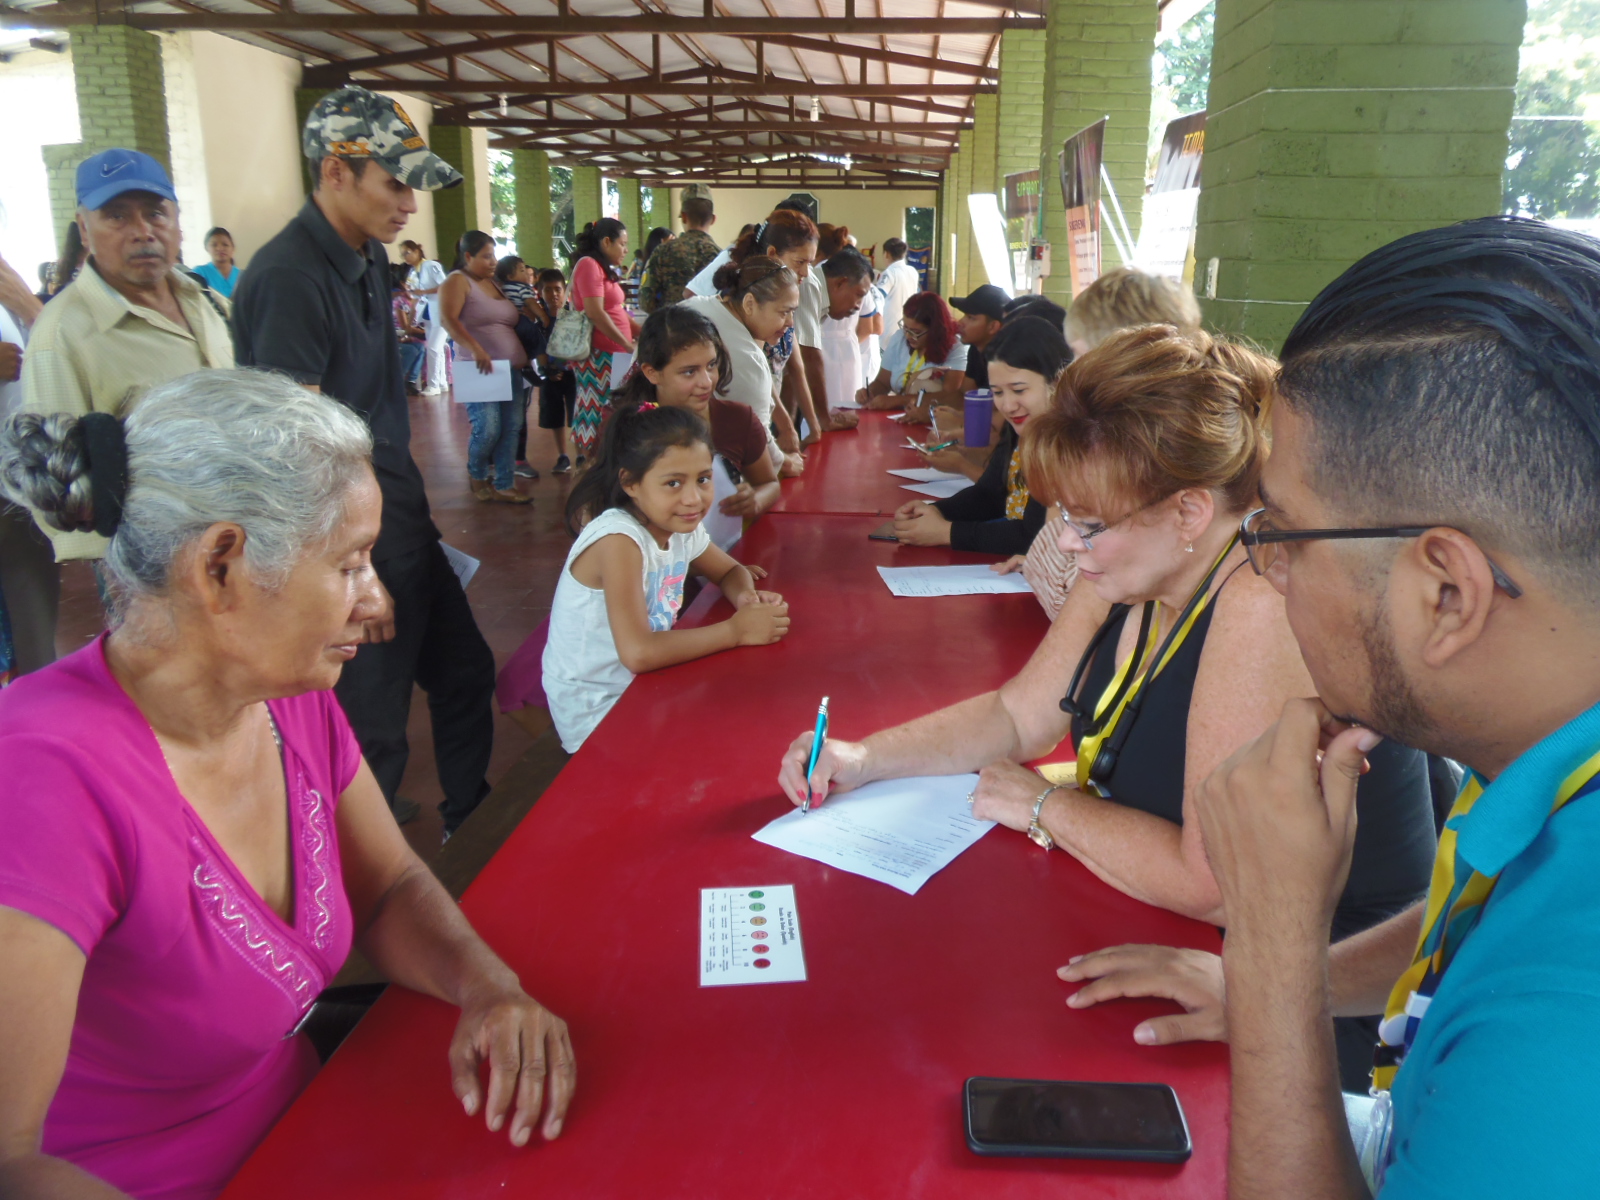 Santanecos beneficiados con Brigada Medica, organizada por Club Rotario Santa Ana.